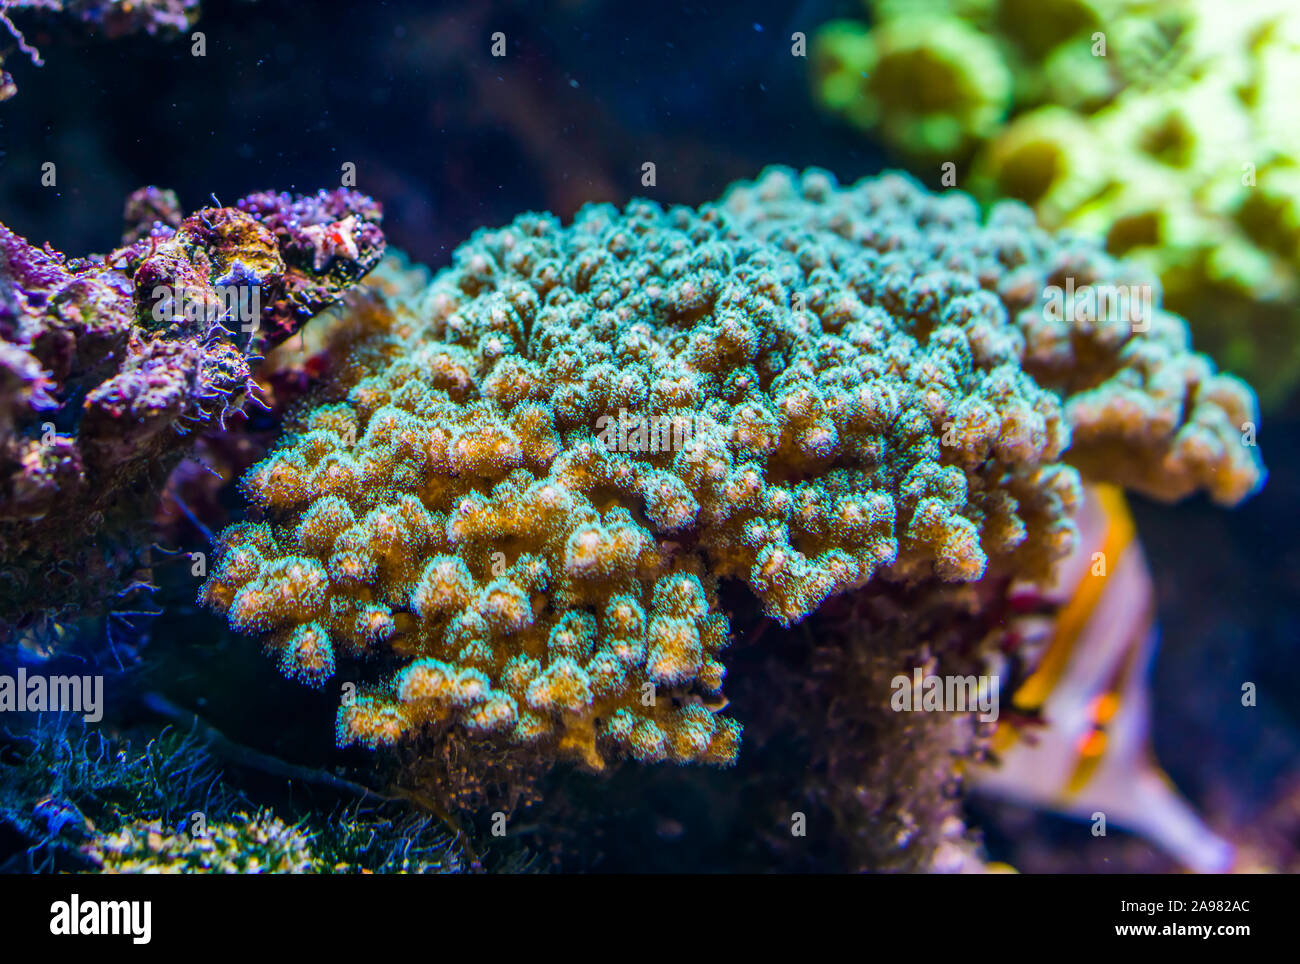 Nahaufnahme von einem tropischen Stony coral Specie, populäre dekorative Tiere für das Aquarium, das das Meeresleben Hintergrund Stockfoto